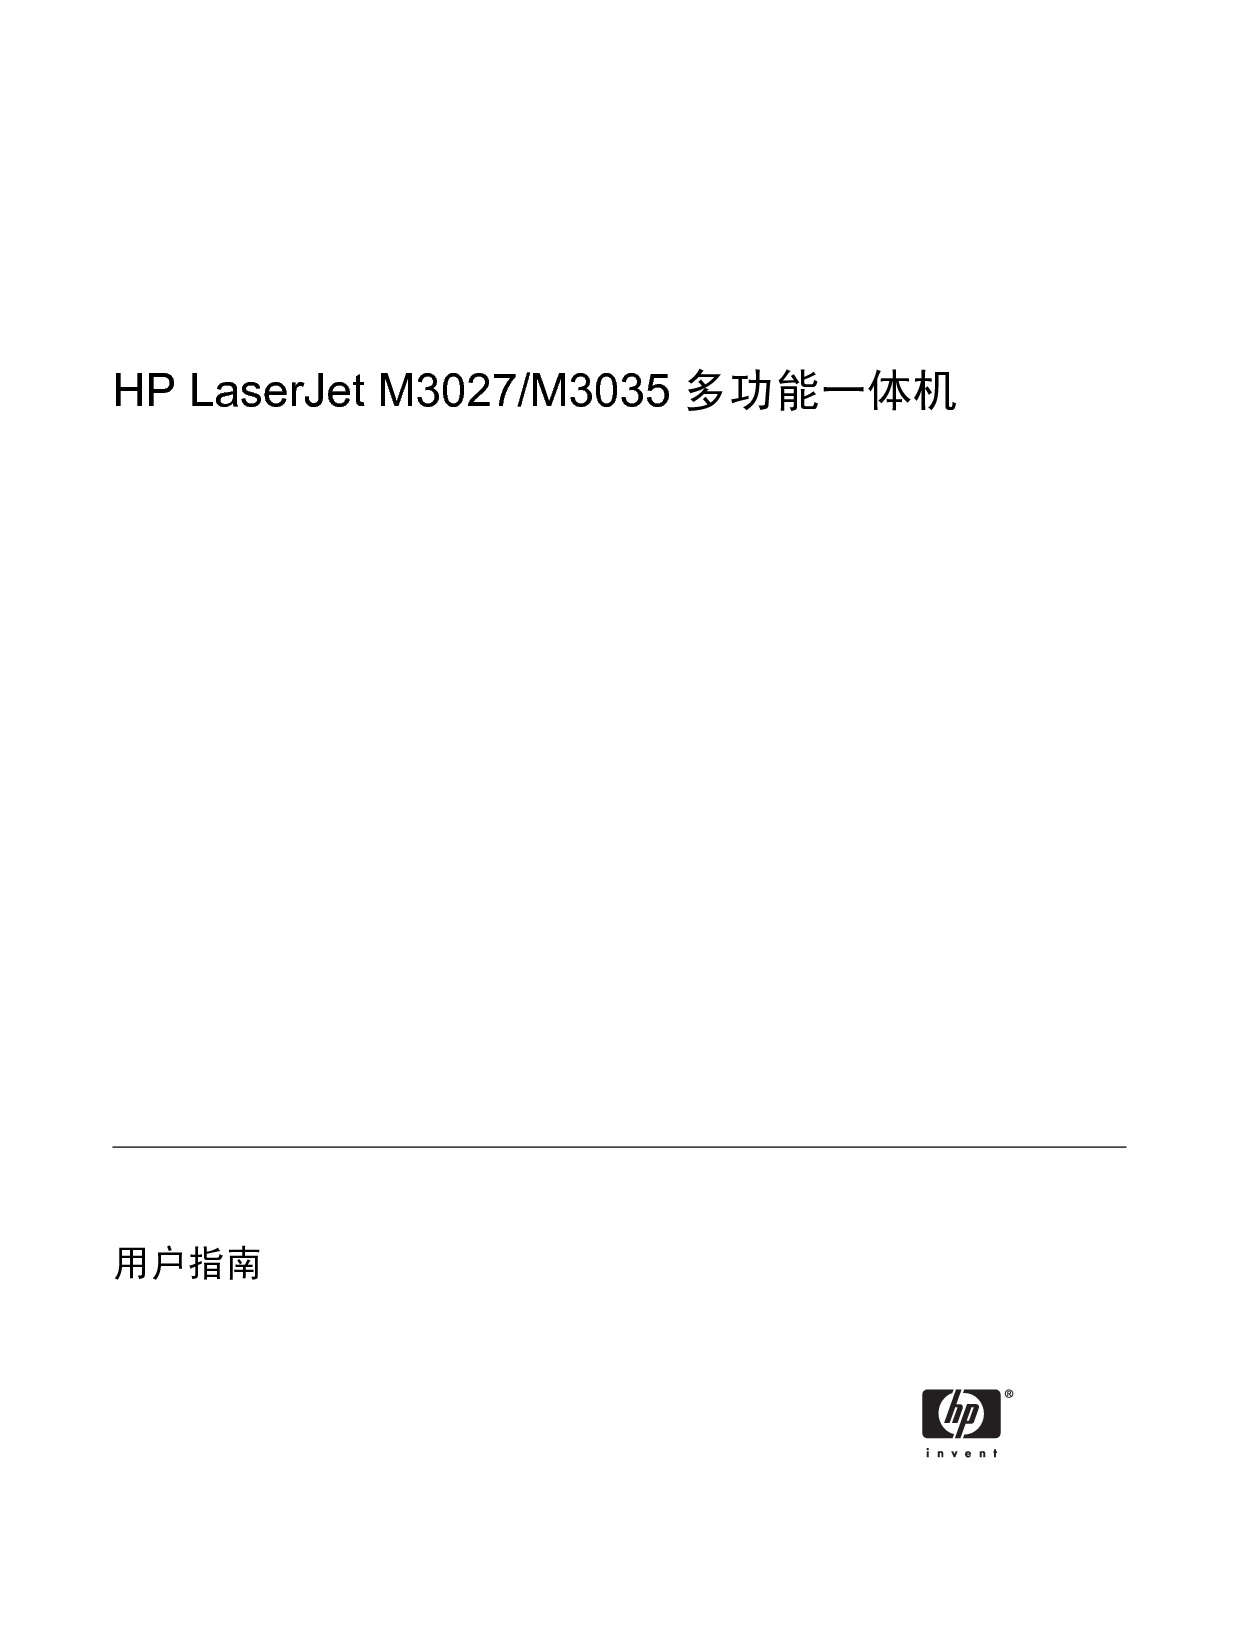 惠普 HP LaserJet M3027 mfp 用户指南 第2页